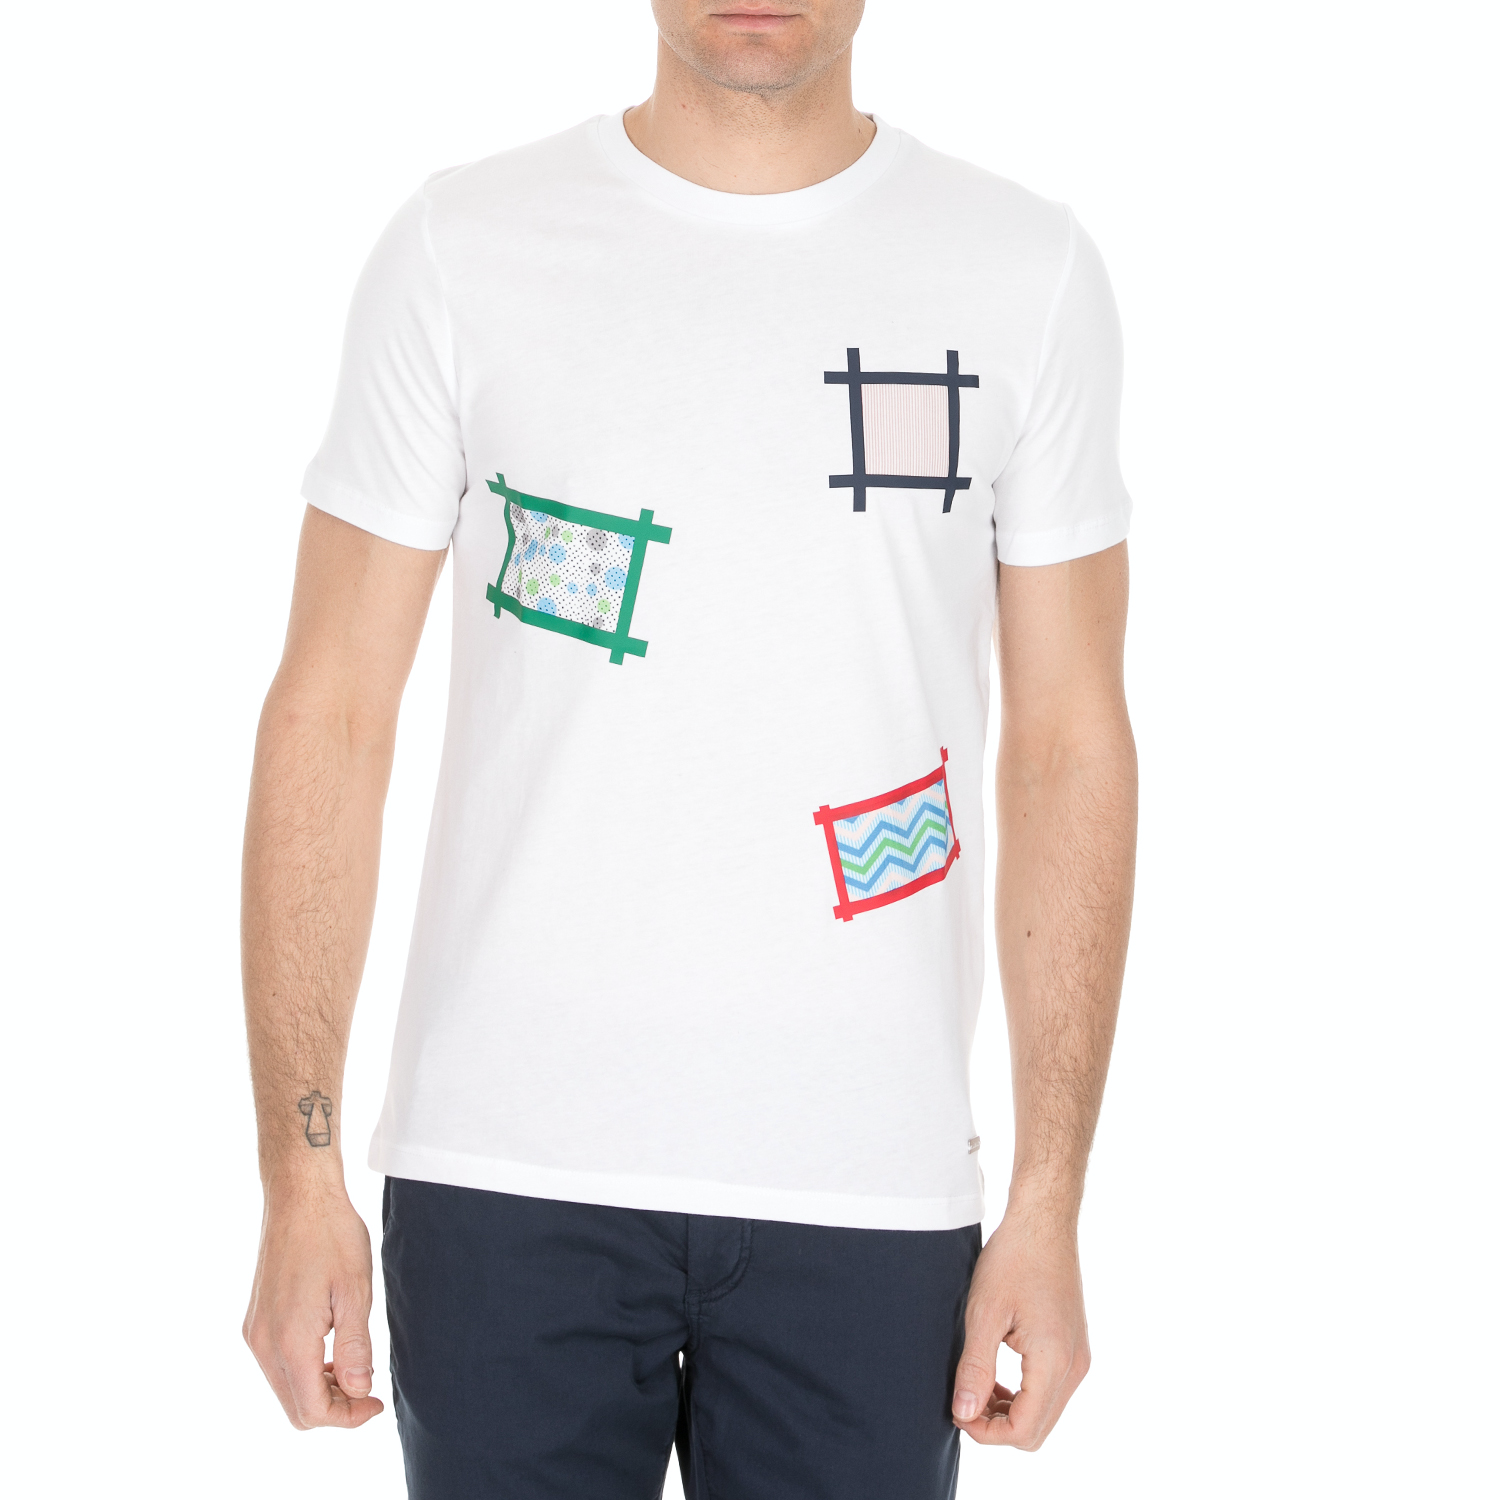 Ανδρικά/Ρούχα/Μπλούζες/Κοντομάνικες SSEINSE - Ανδρική κοντομάνικη μπλούζα SSEINSE λευκή